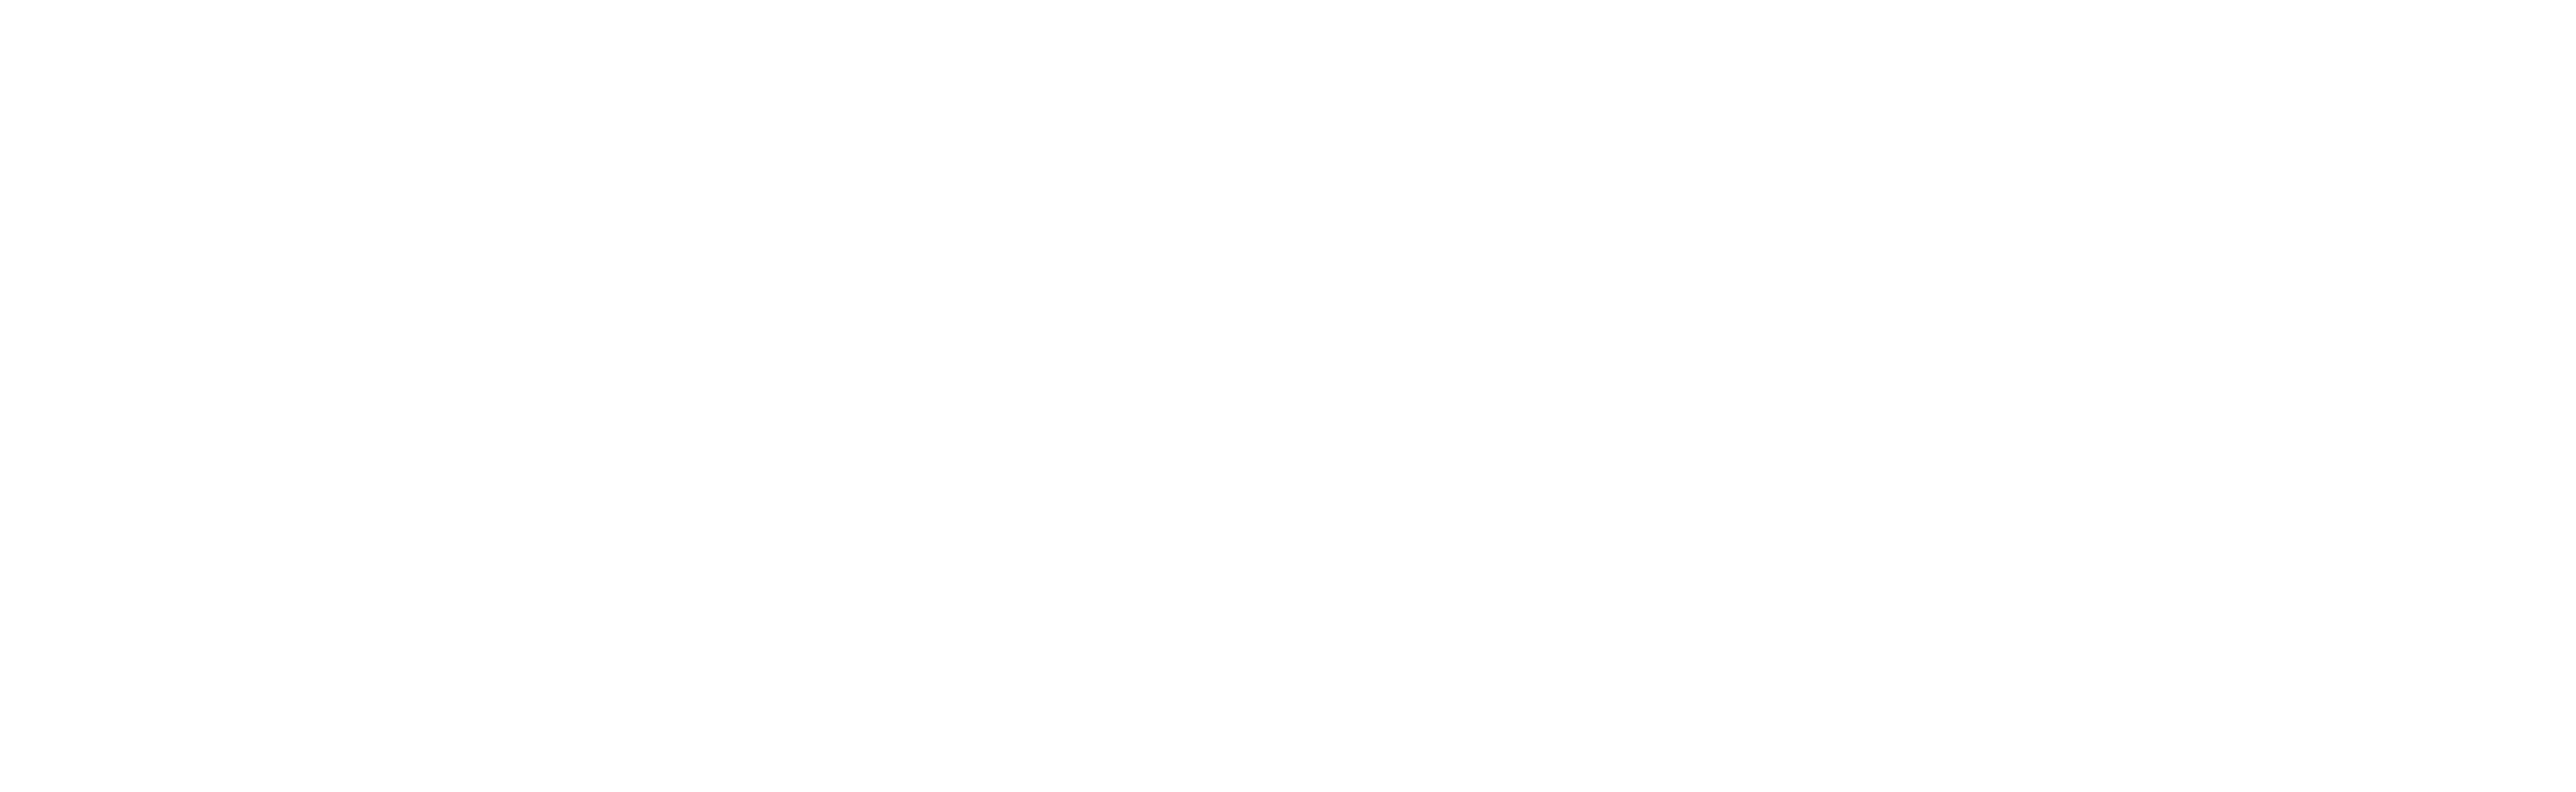 MARIANA FERNÁNDEZ Photography